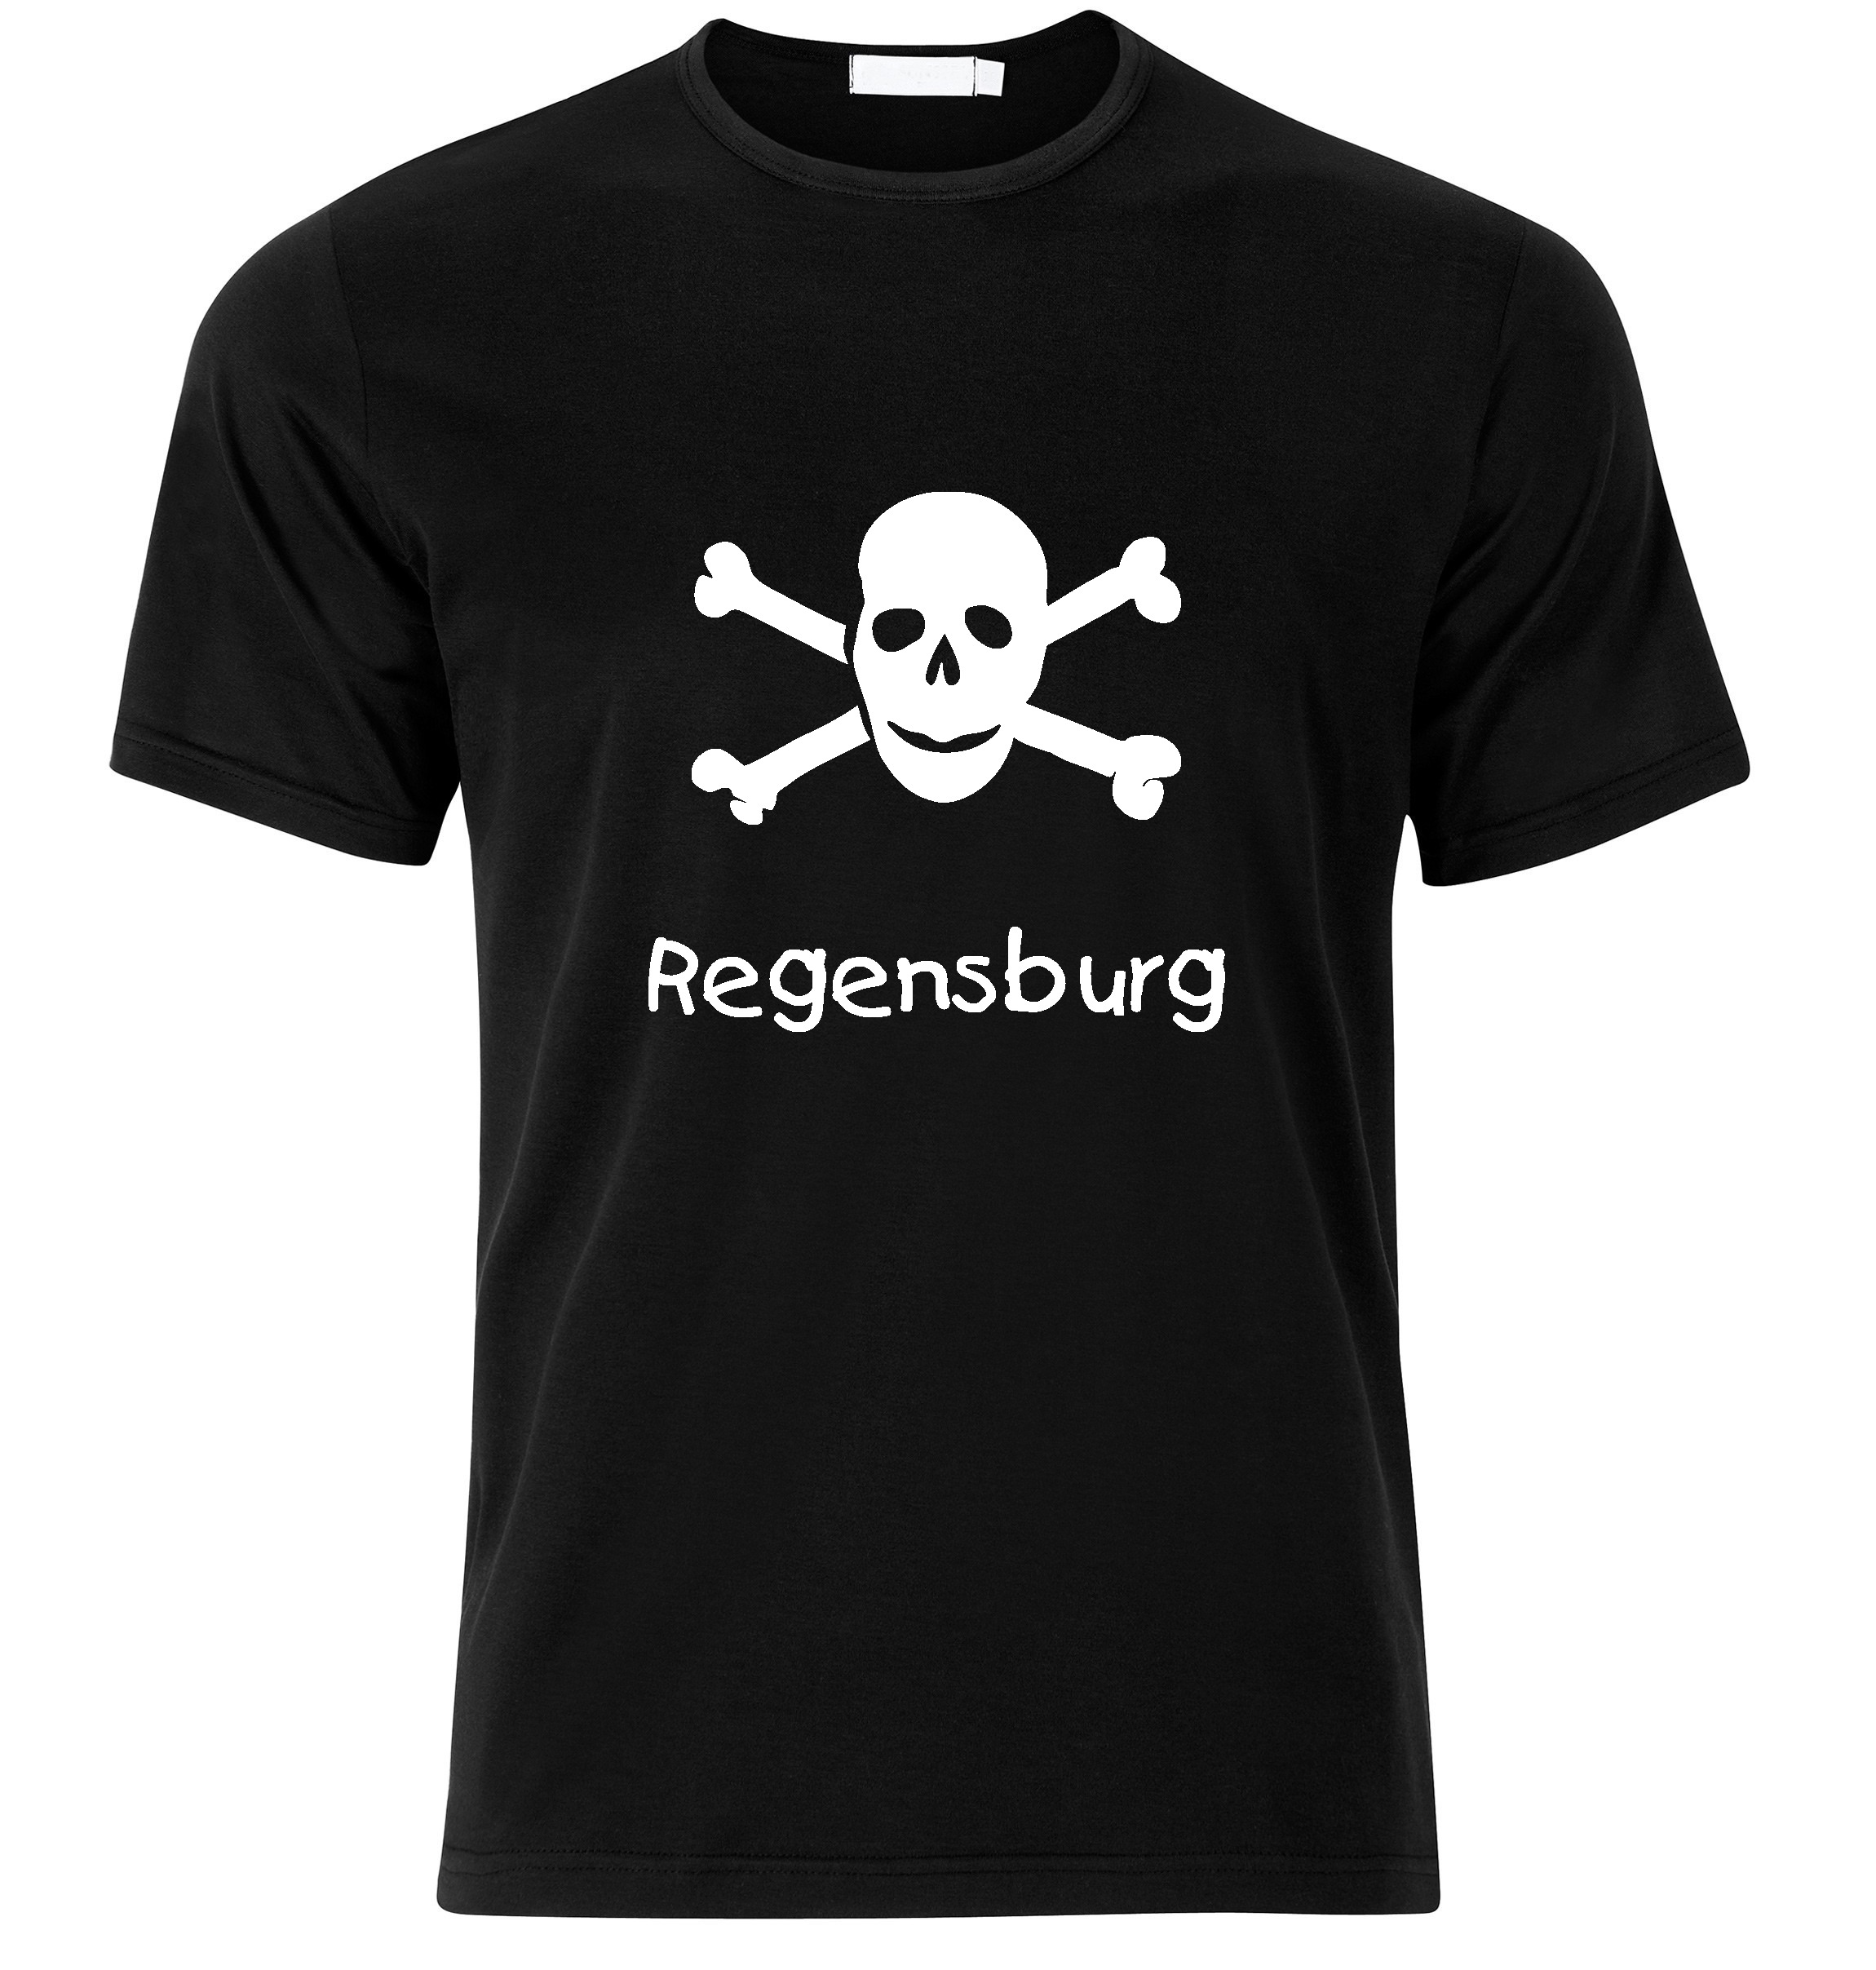 T-Shirt Regensburg Jolly Roger, Totenkopf